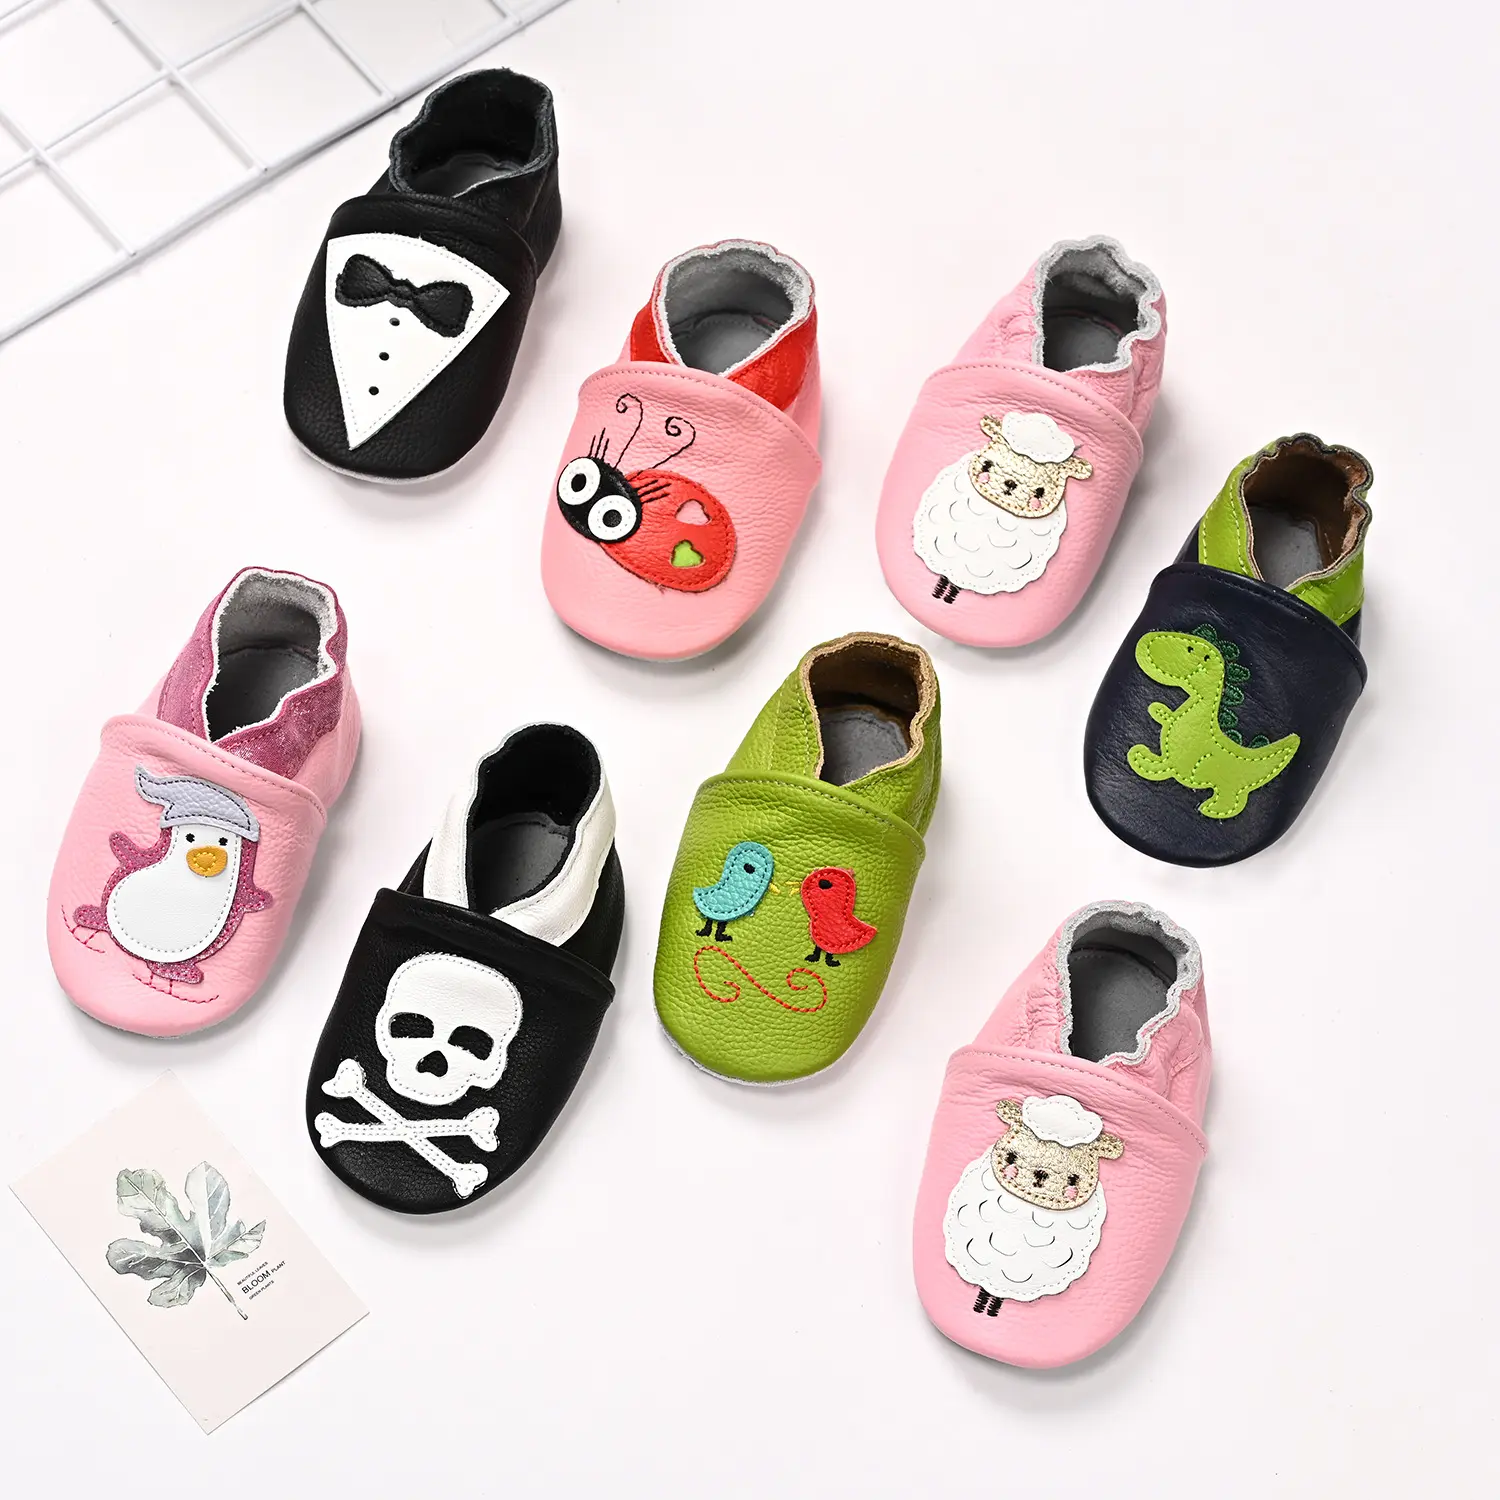 Vente en gros de chaussures personnalisées en cuir véritable pour bébés chaussures de marche pour bébés et tout-petits chaussures pour nouveau-nés chaussures à semelle souple pour premiers pas